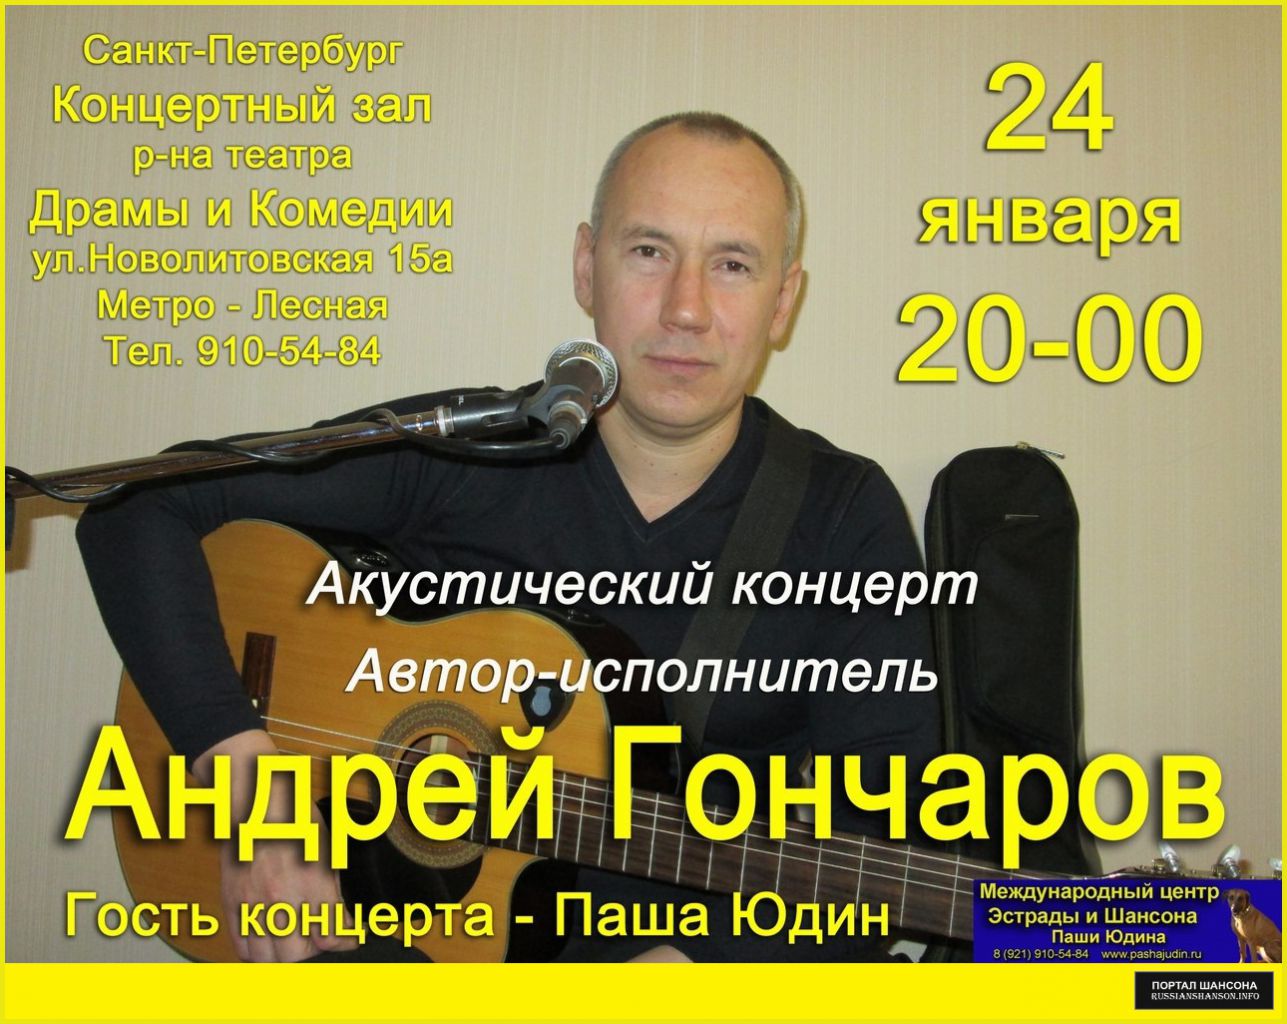 Андрей Гончаров 24 января 2015 года